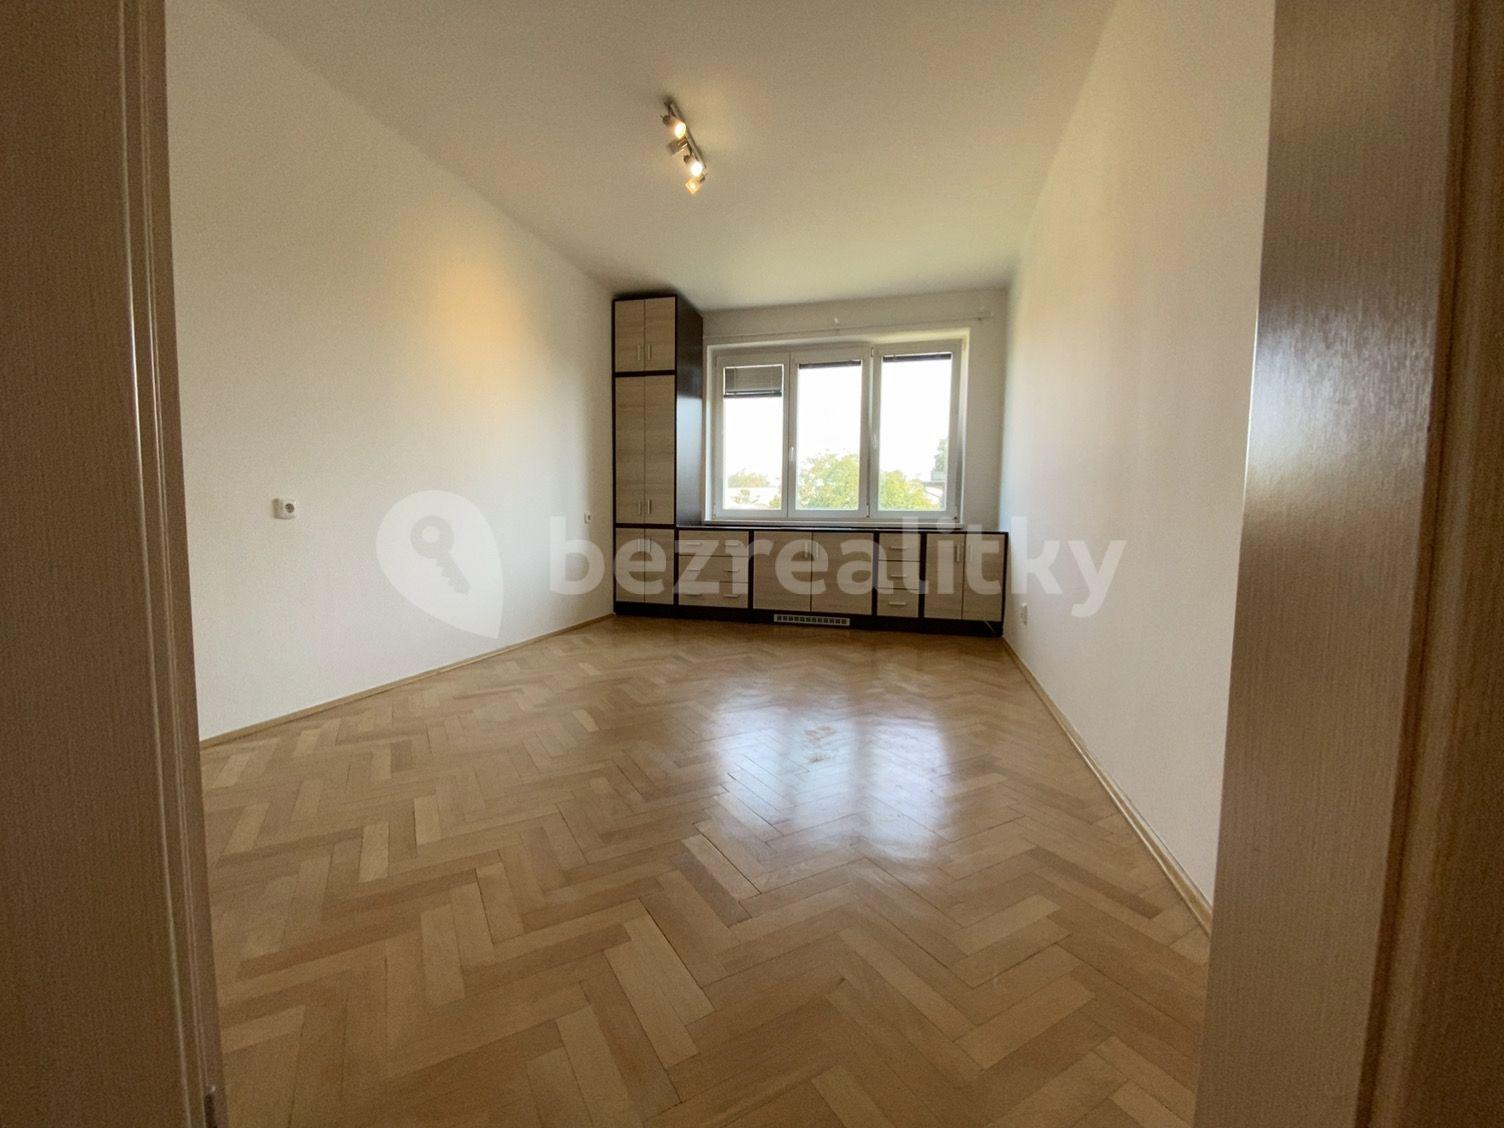 2 bedroom flat to rent, 54 m², Šumperská, Prague, Prague